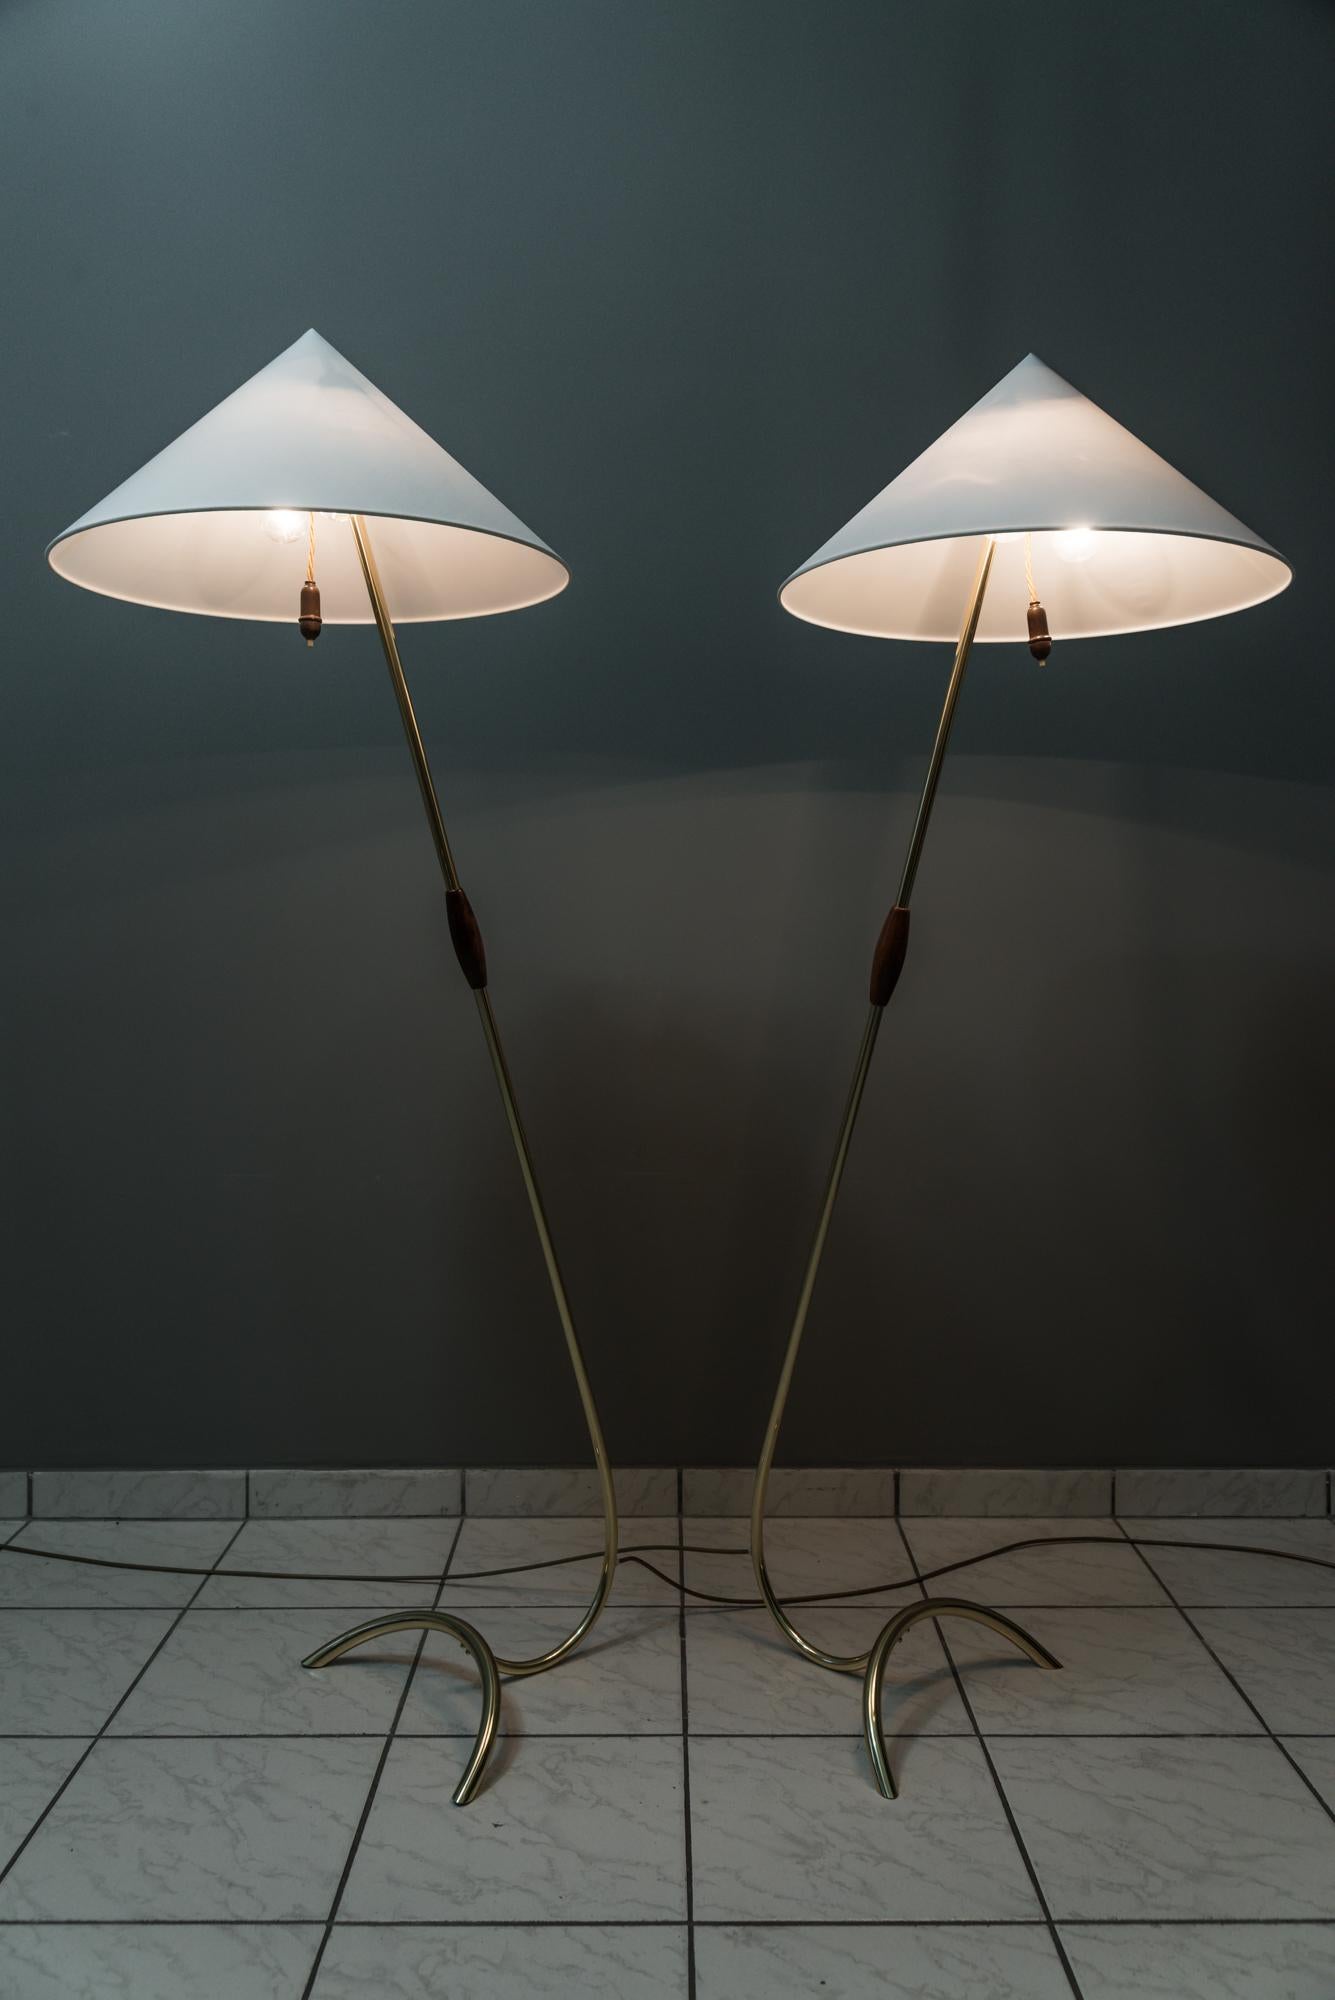 Zwei Rupert Nikoll Stehlampen, um 1950er Jahre
Die Stehlampen sind poliert und einbrennlackiert.
Die Jalousien werden ersetzt (neu).
Die originalen Holzgriffe sind poliert.
Die Stehlampen sind in einem sehr guten Zustand.
Der Preis gilt für das